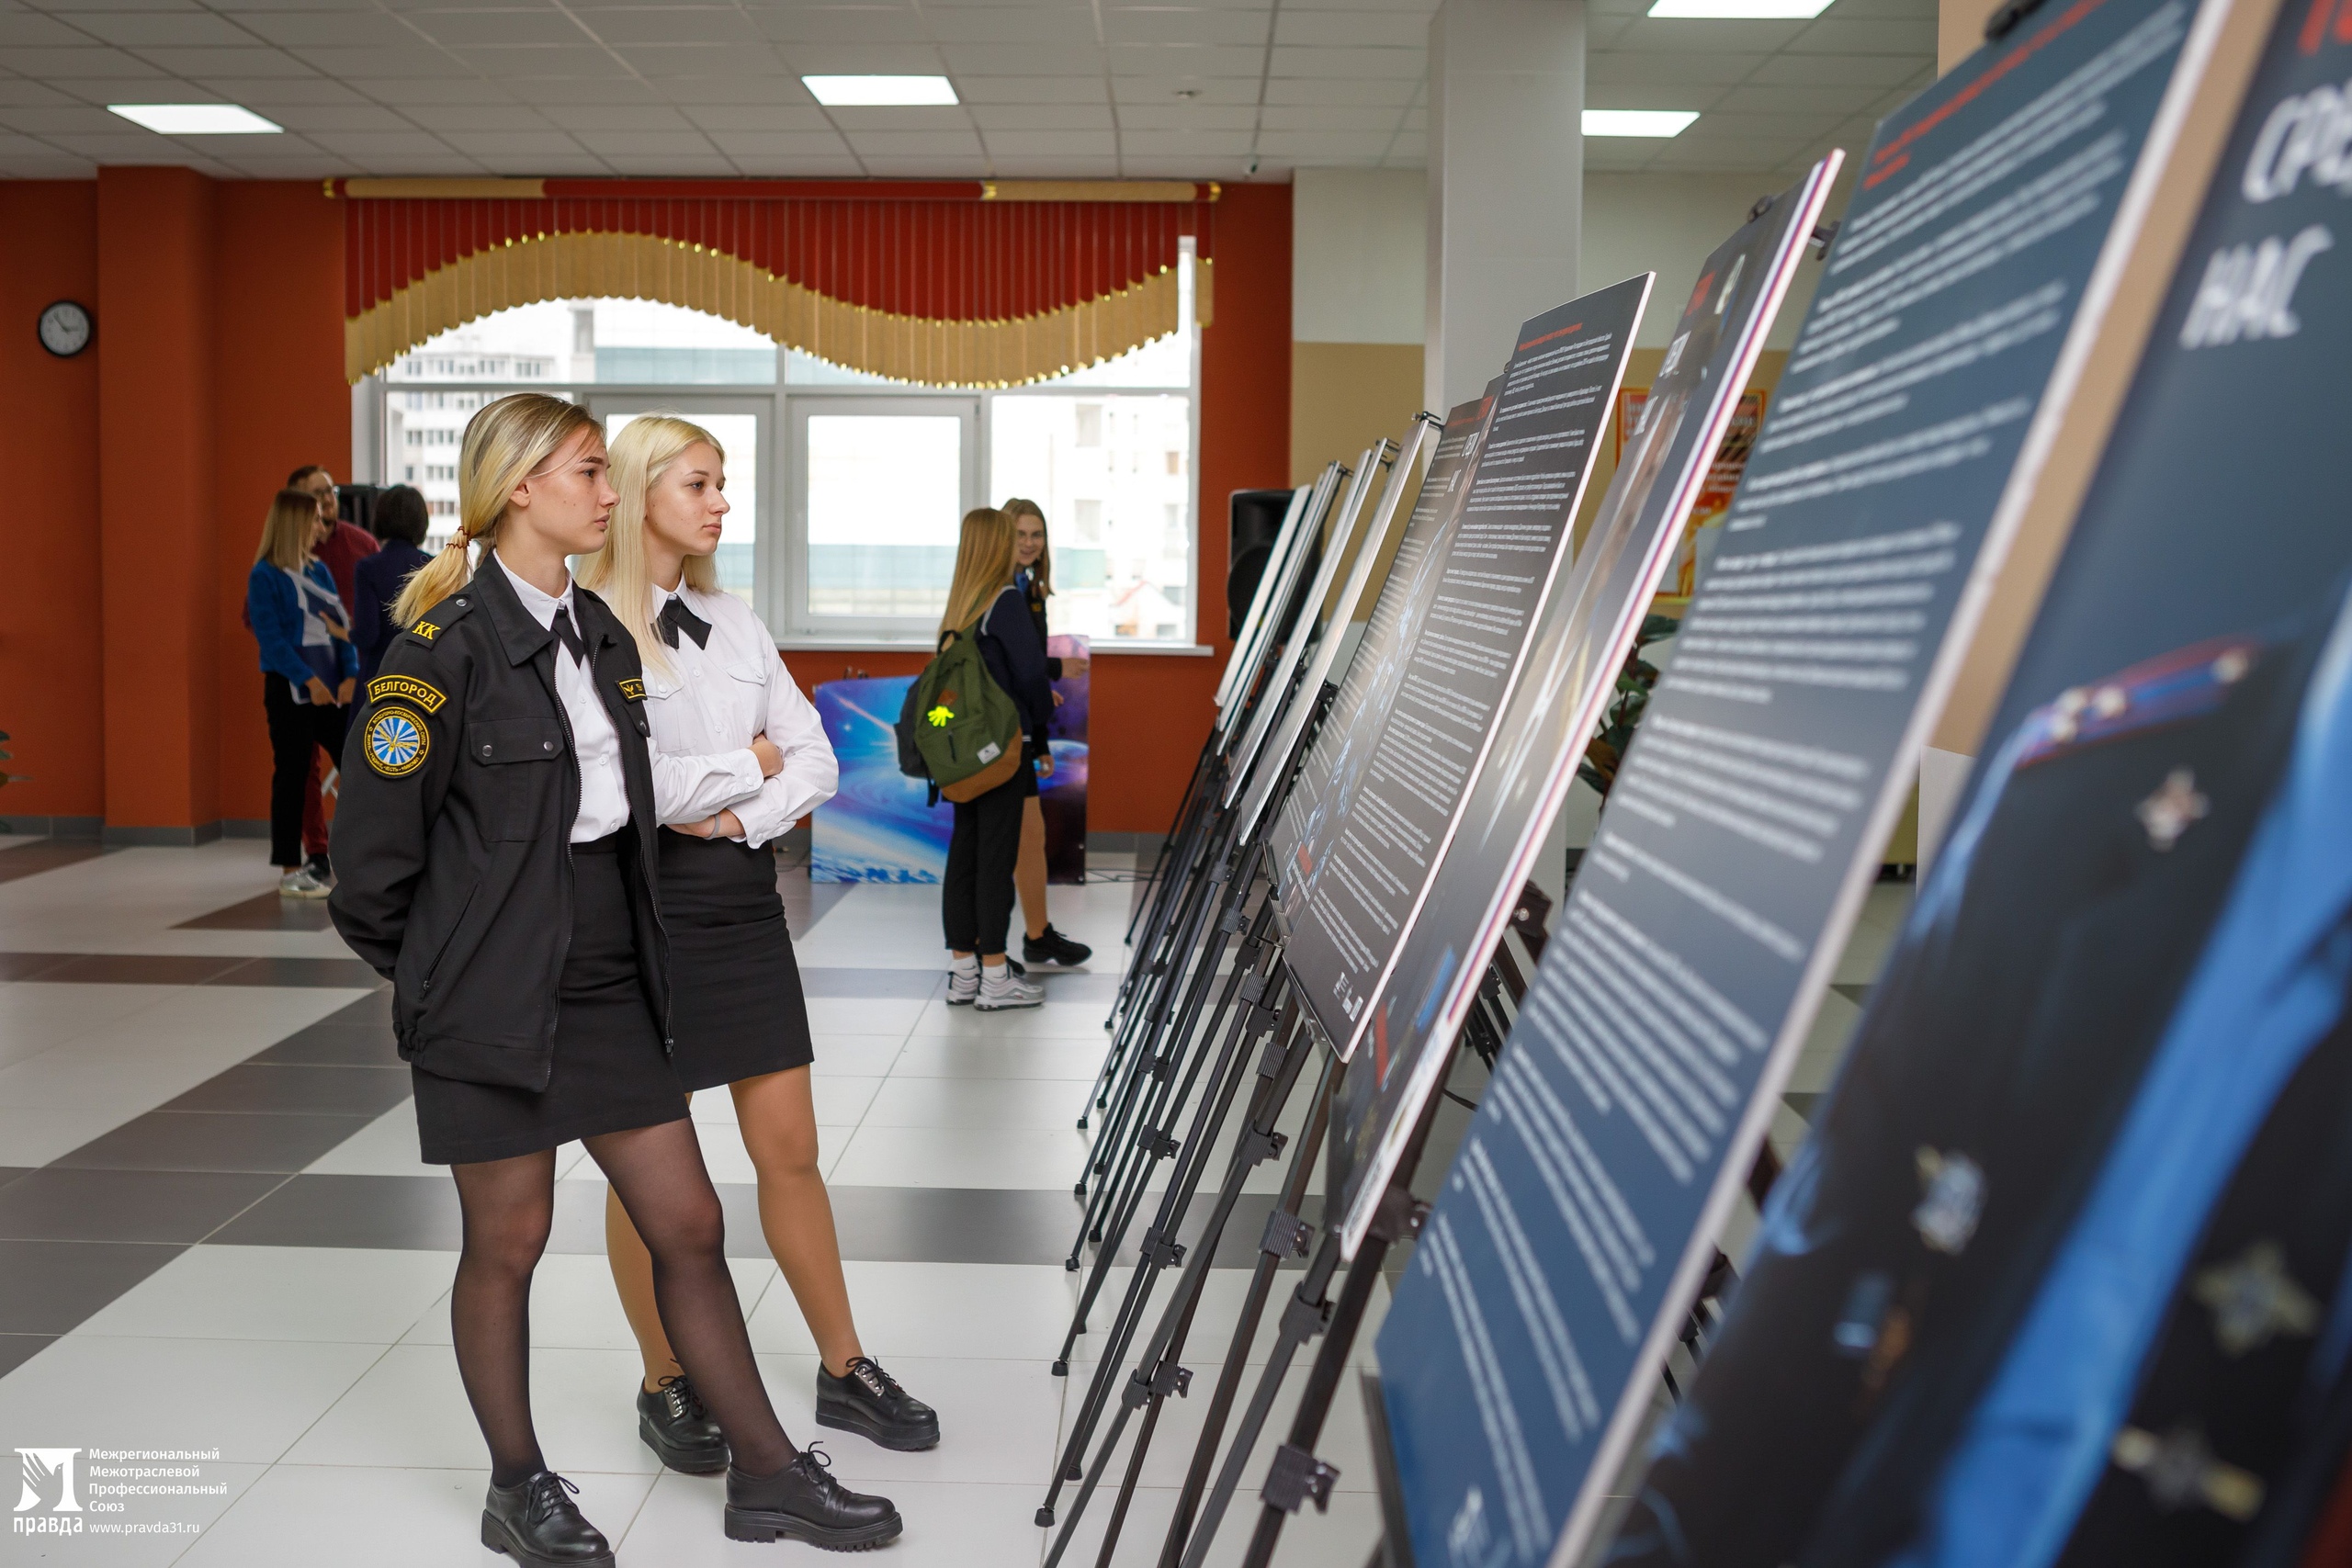 ​Профсоюз «Правда» дал старт патриотическому фотопроекту «Герои среди нас» в школах города Белгорода*